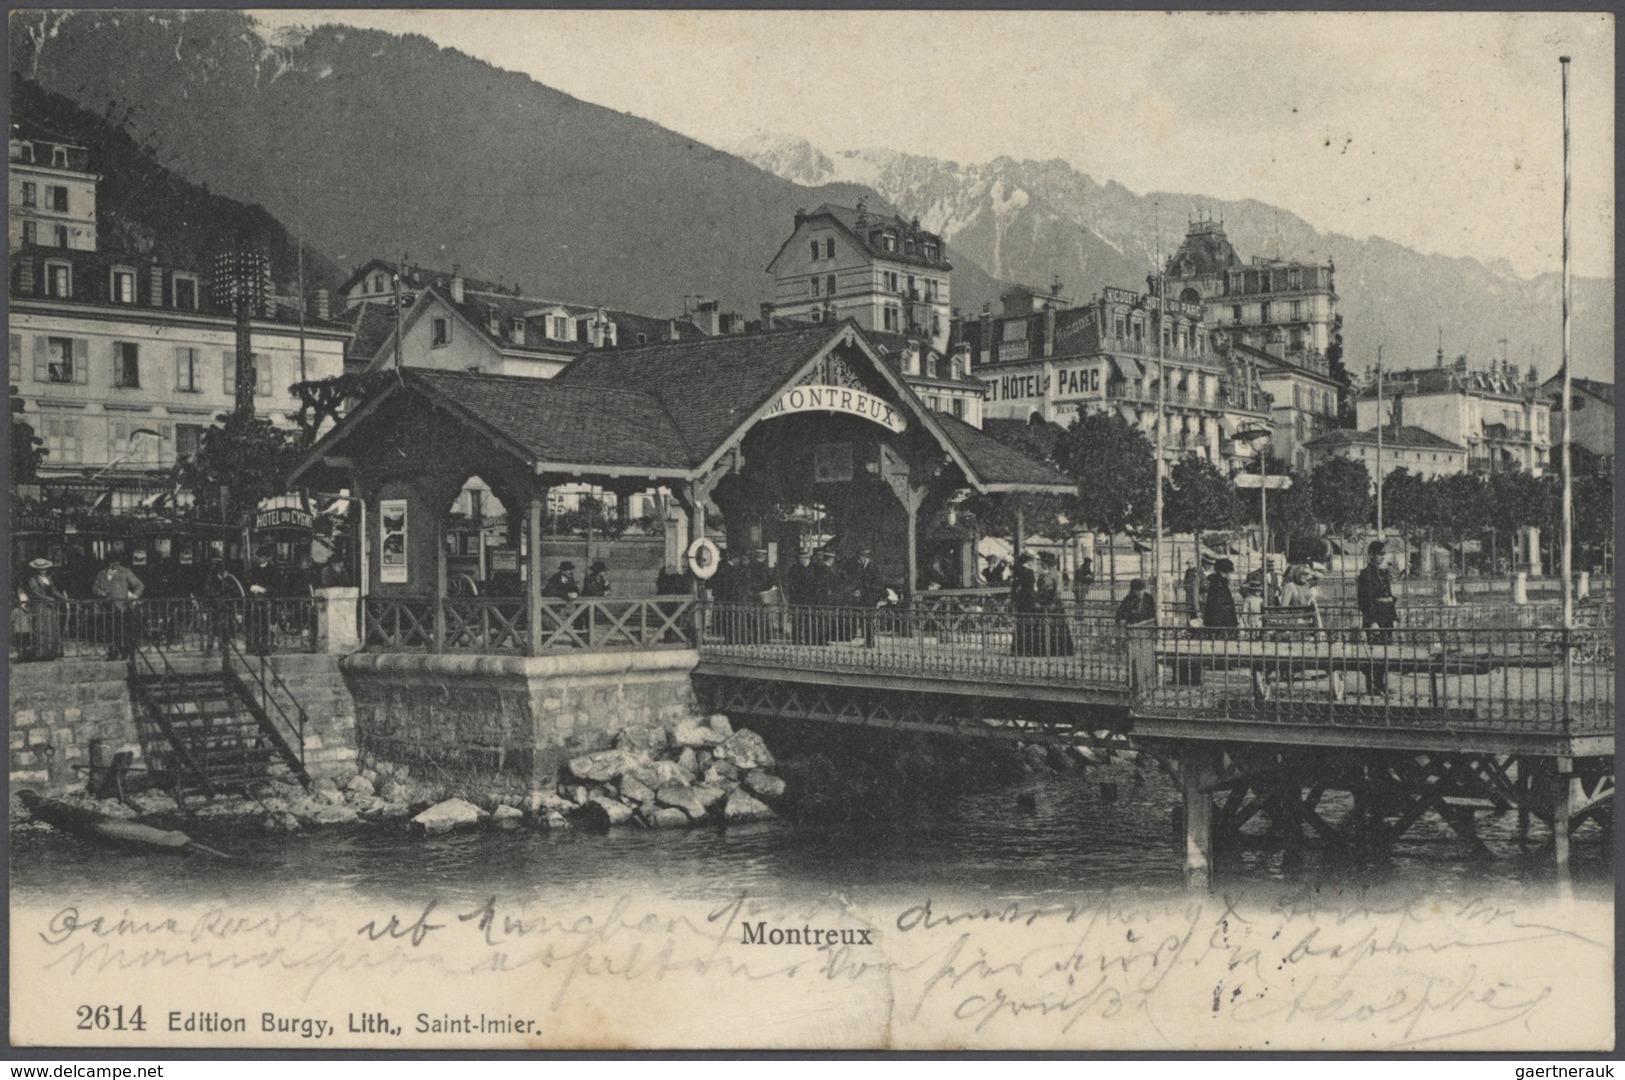 21758 Ansichtskarten: 1895-1905, tolles Album mit 400 gebrauchten AK an eine Adresse, nur topographische K